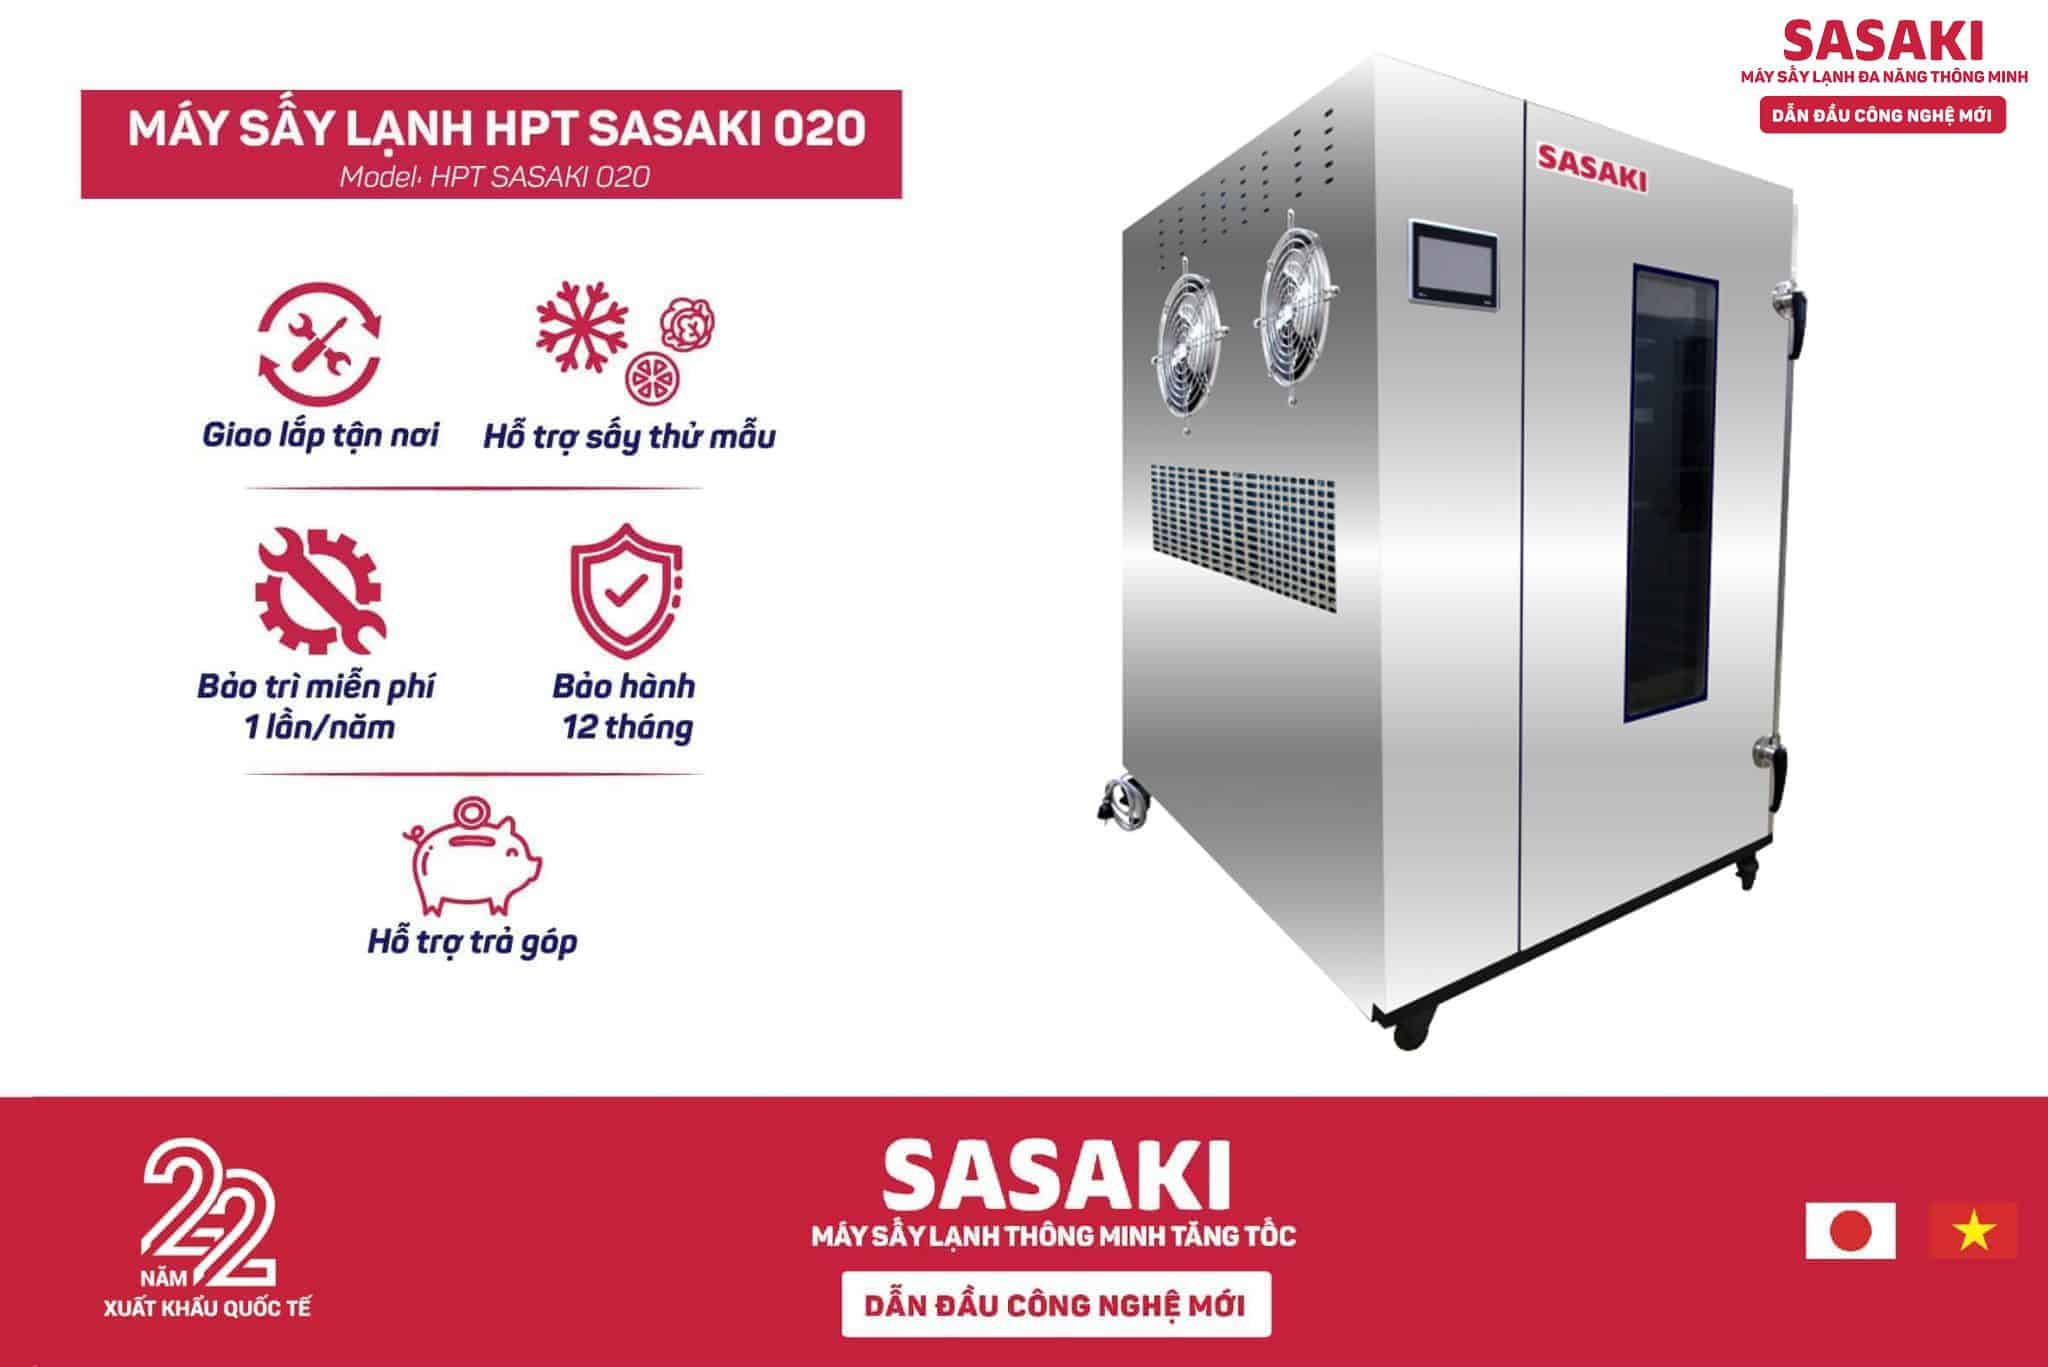 Máy sấy lạnh HPTSASAKI020 có nhiều ưu điểm nổi bật mang lại hiệu quả bảo quản yến cao